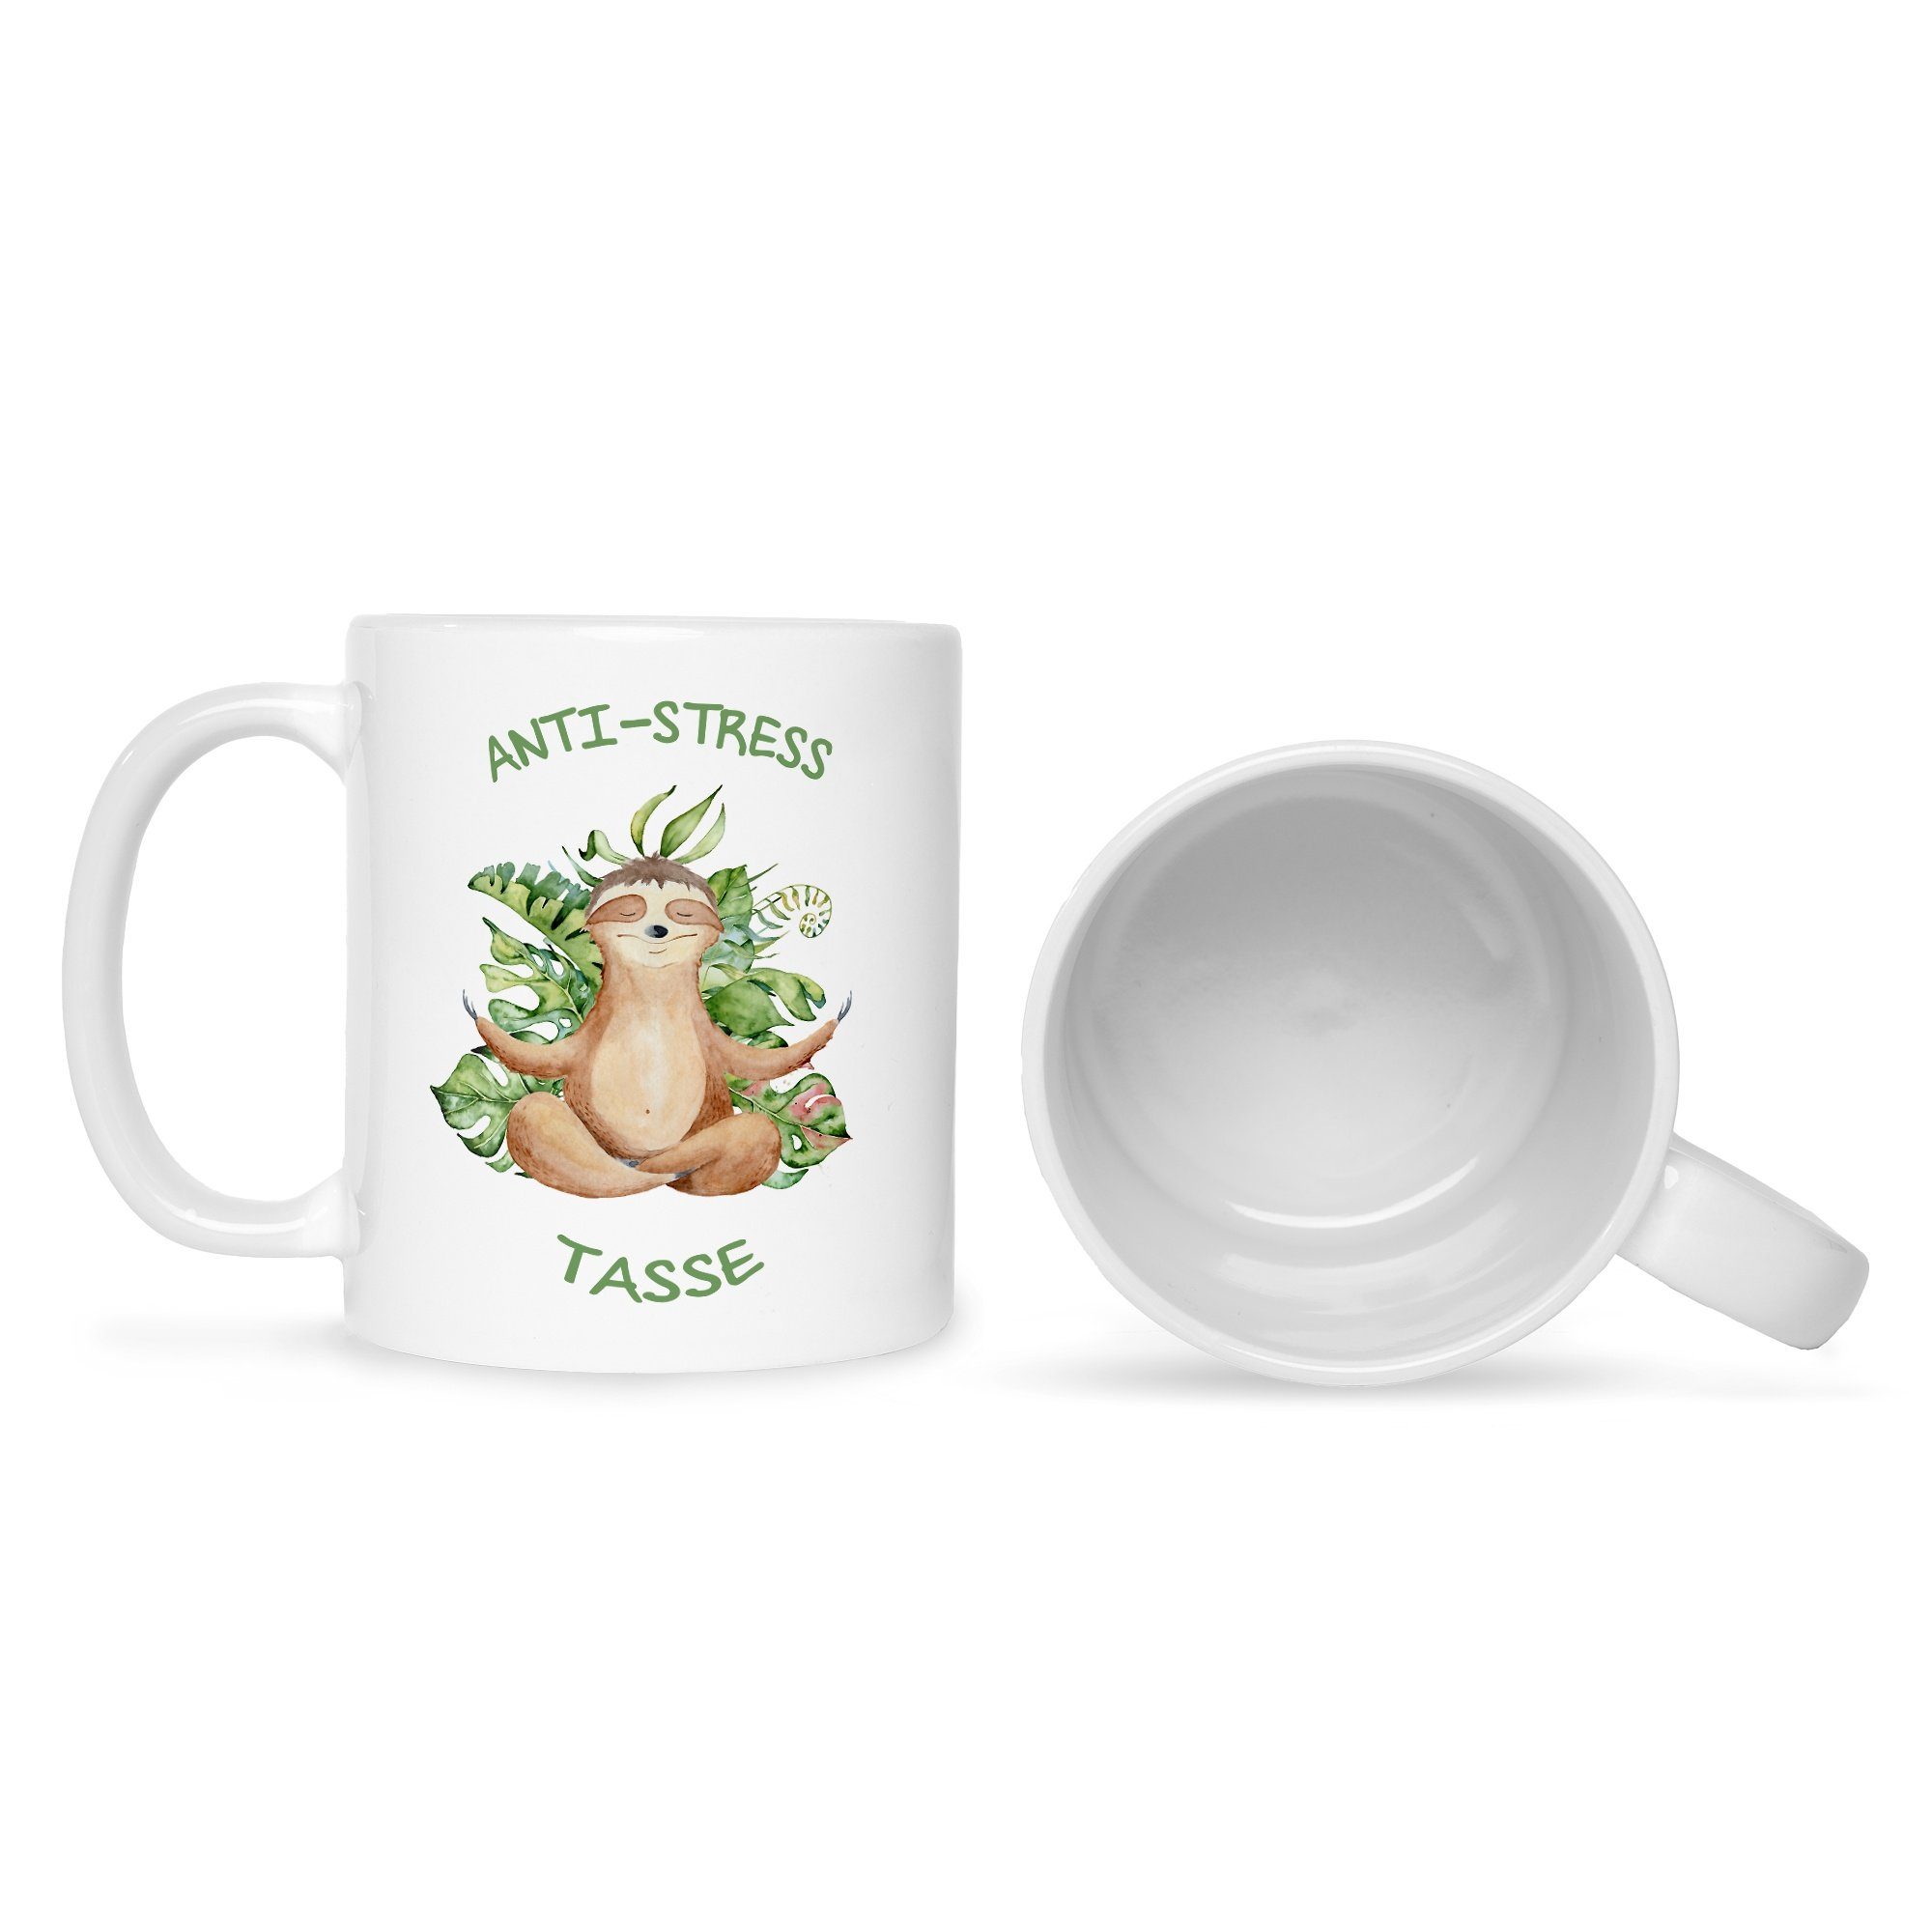 GRAVURZEILE Tasse Bedruckte Ihn & Weiß Spruch - Sie für mit Tasse, Faultiermotiv Tasse Keramik, mit Anti-Stress Spruchtasse lustige